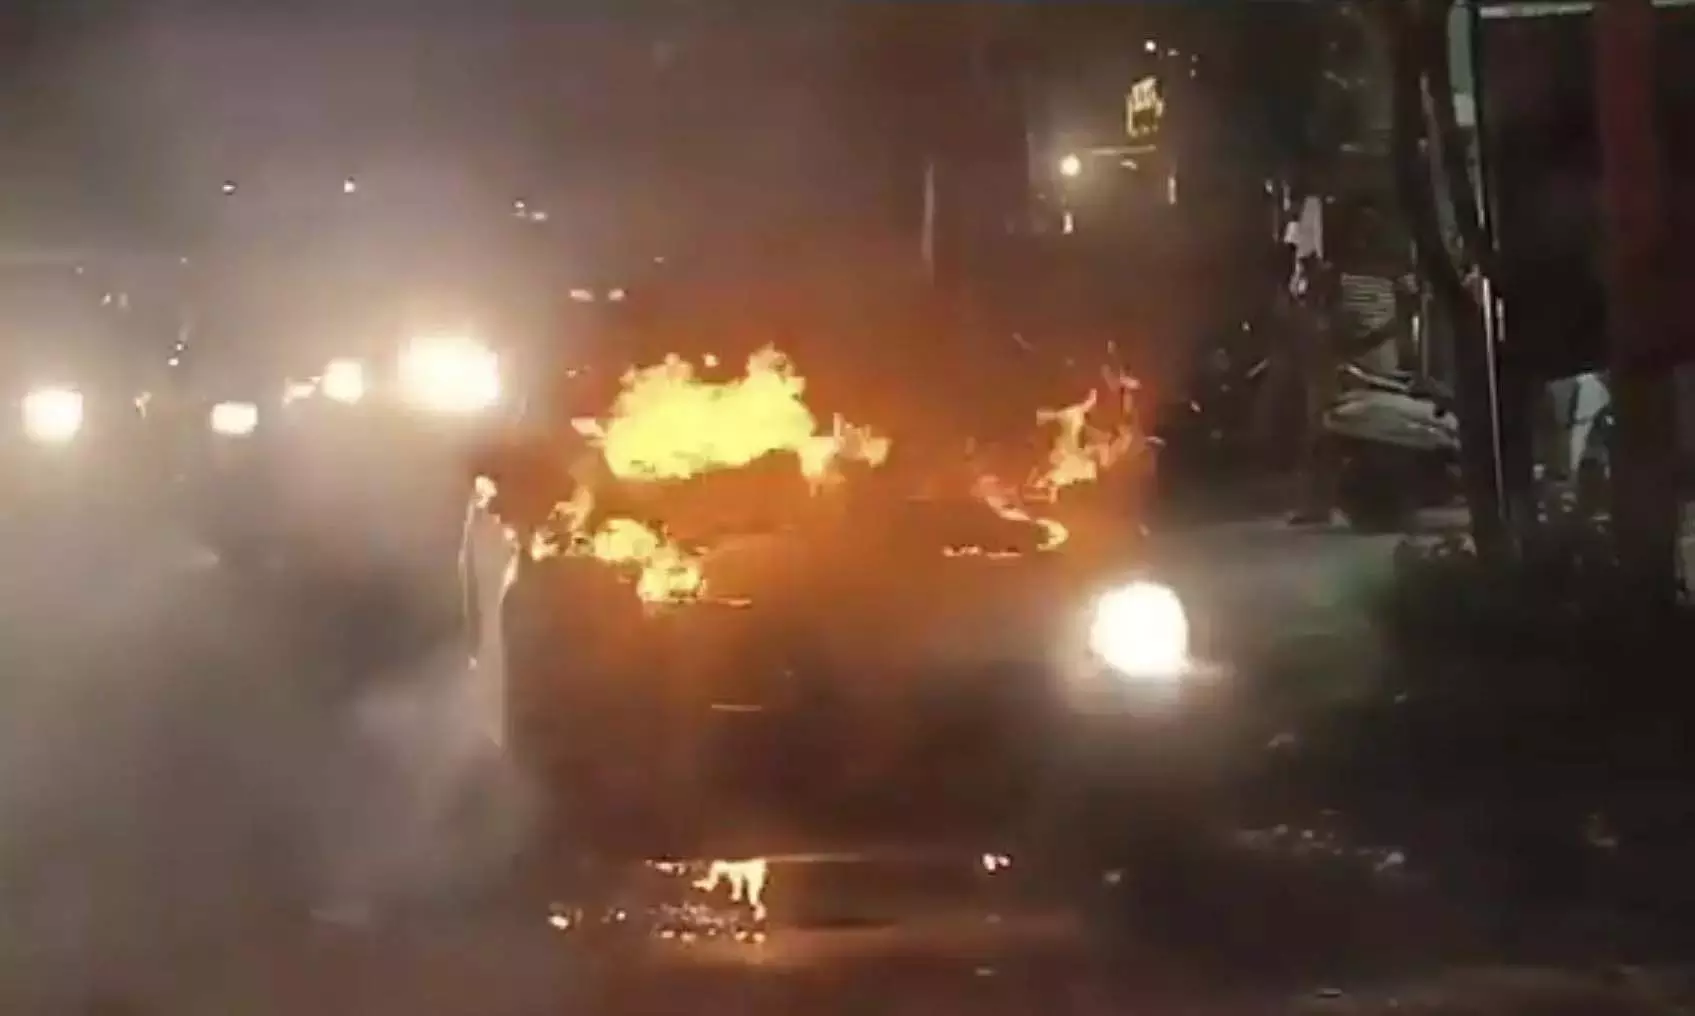 Kukatpalli के पास शॉर्ट सर्किट के कारण कार में लगी आग